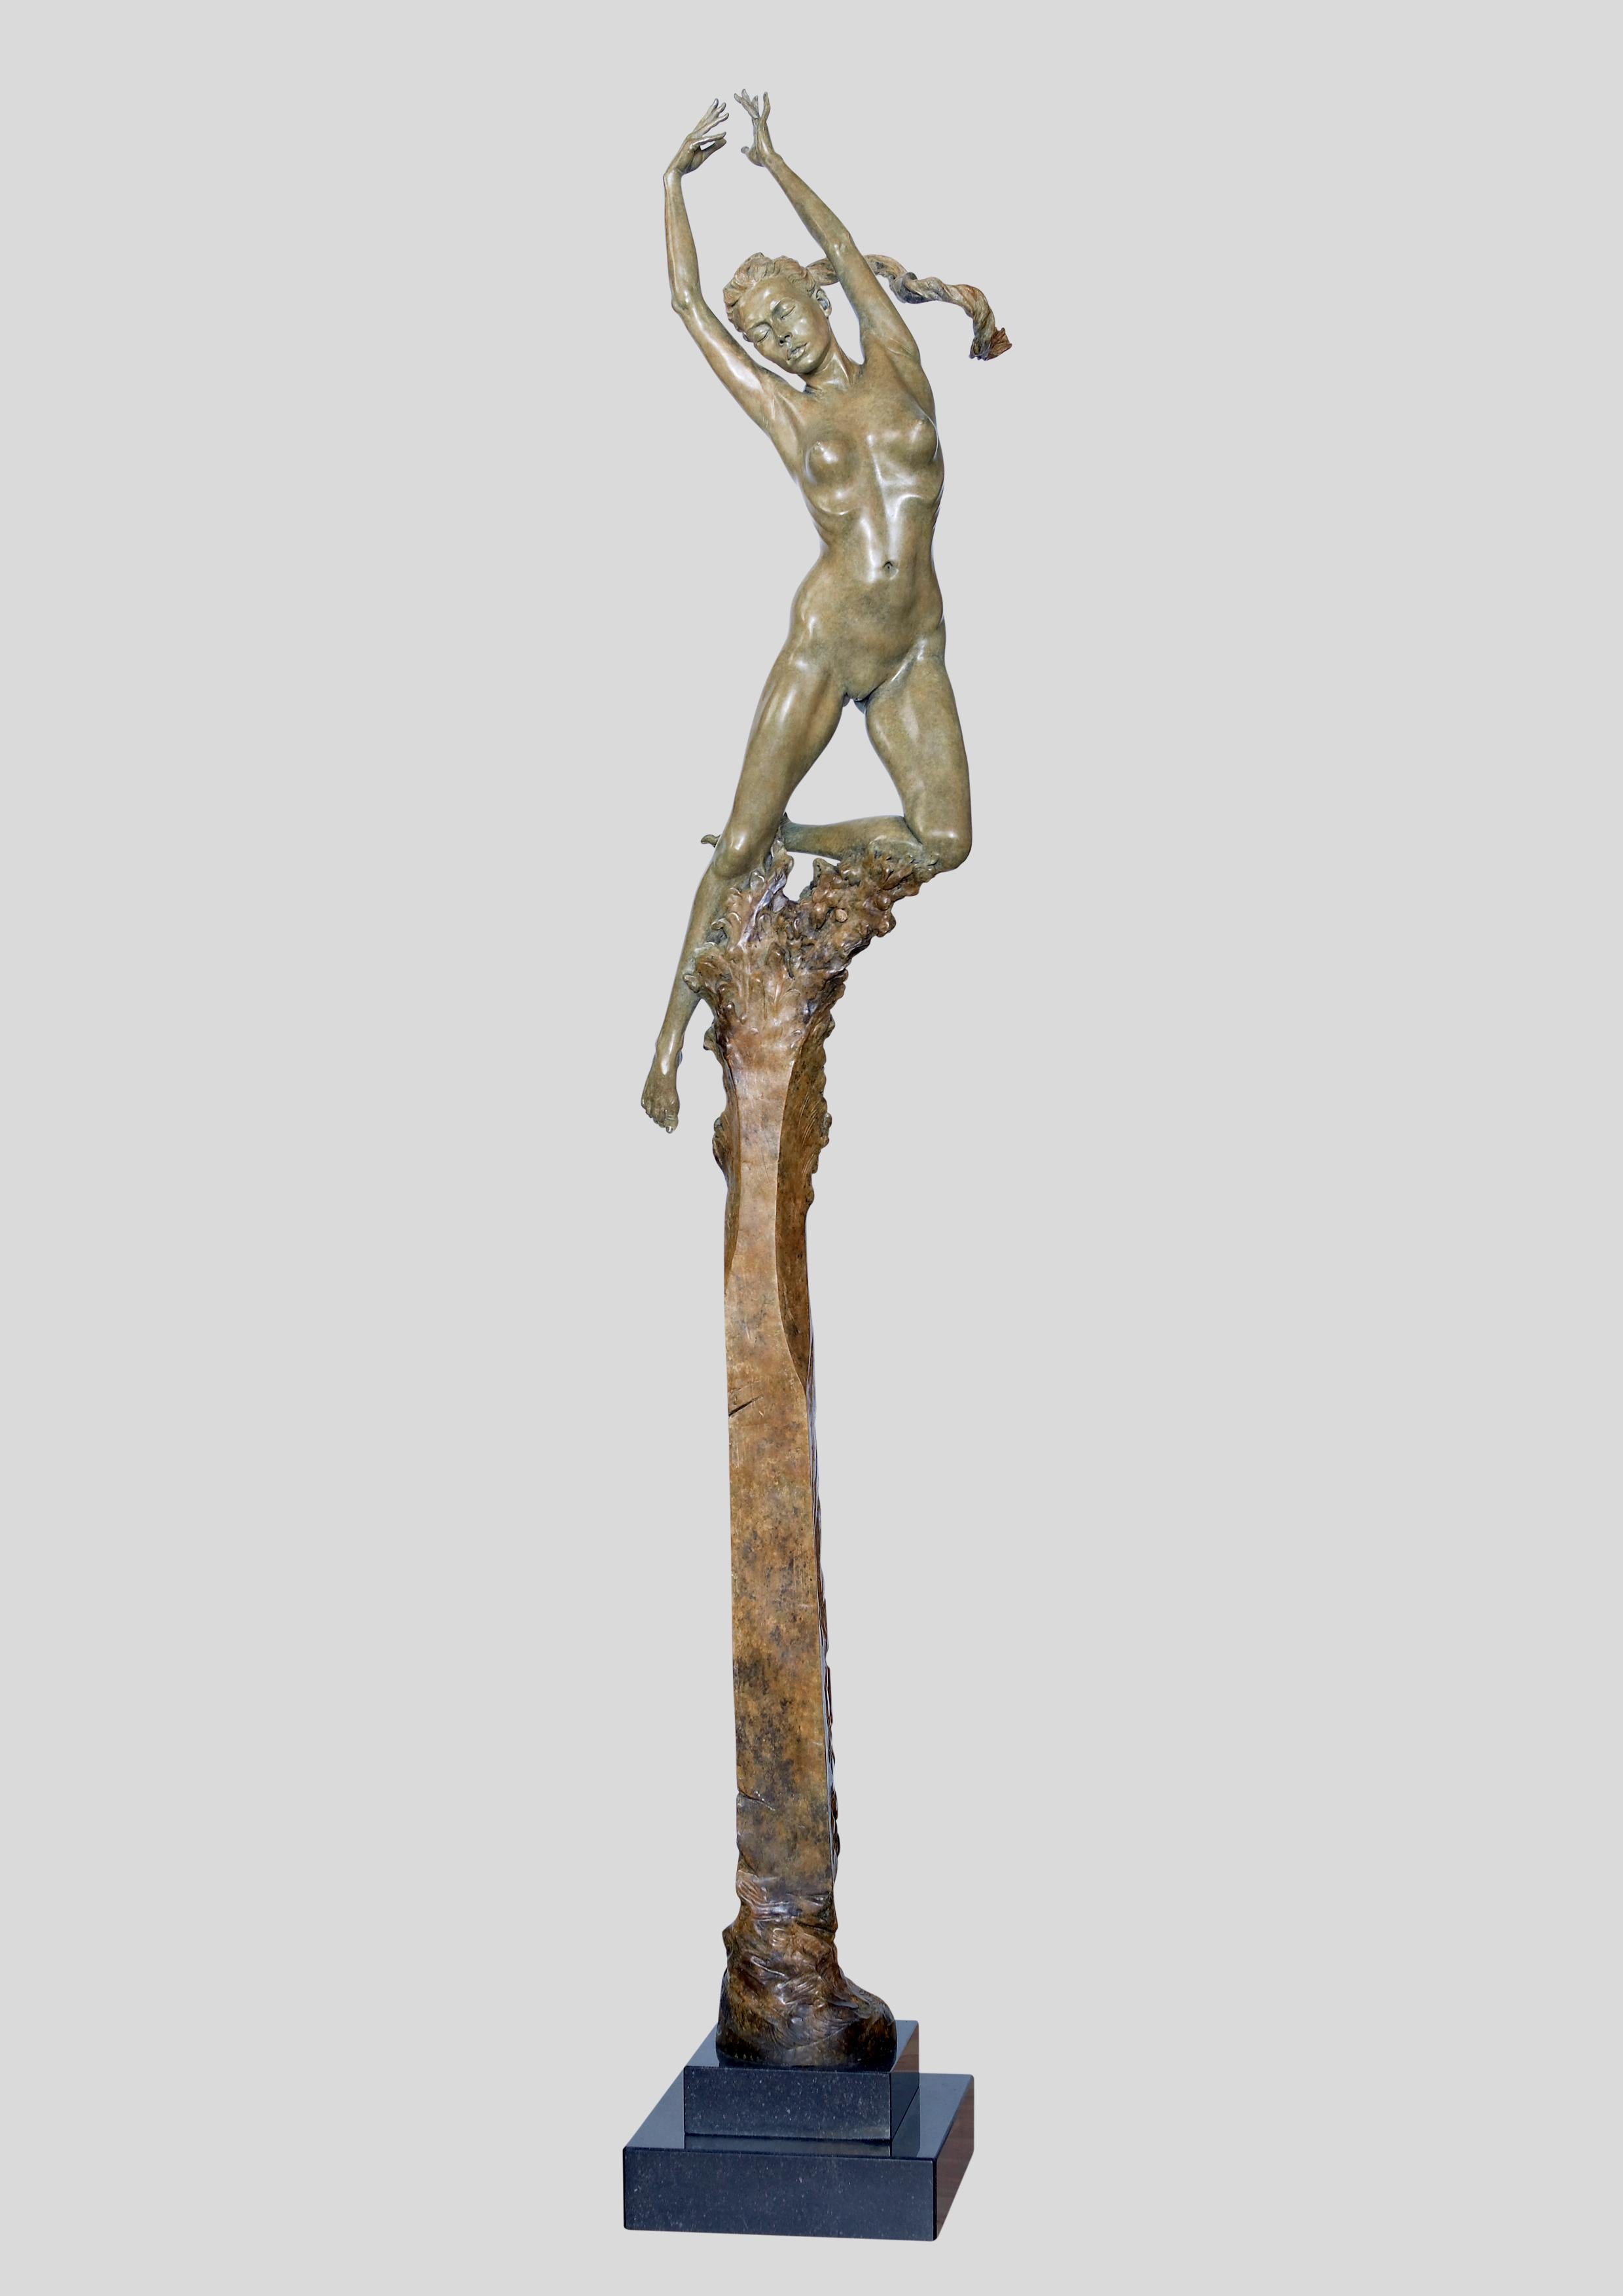 Kora von Carl Payne. Figurative, nackte Bronzeskulptur. Auflage von 9. 

Die Kunst spielte eine große Rolle in Carls akademischer Arbeit, die ihn durch die Burslem School of Art, die Henry Doulton School of Sculpture und zum Stafford College führte.